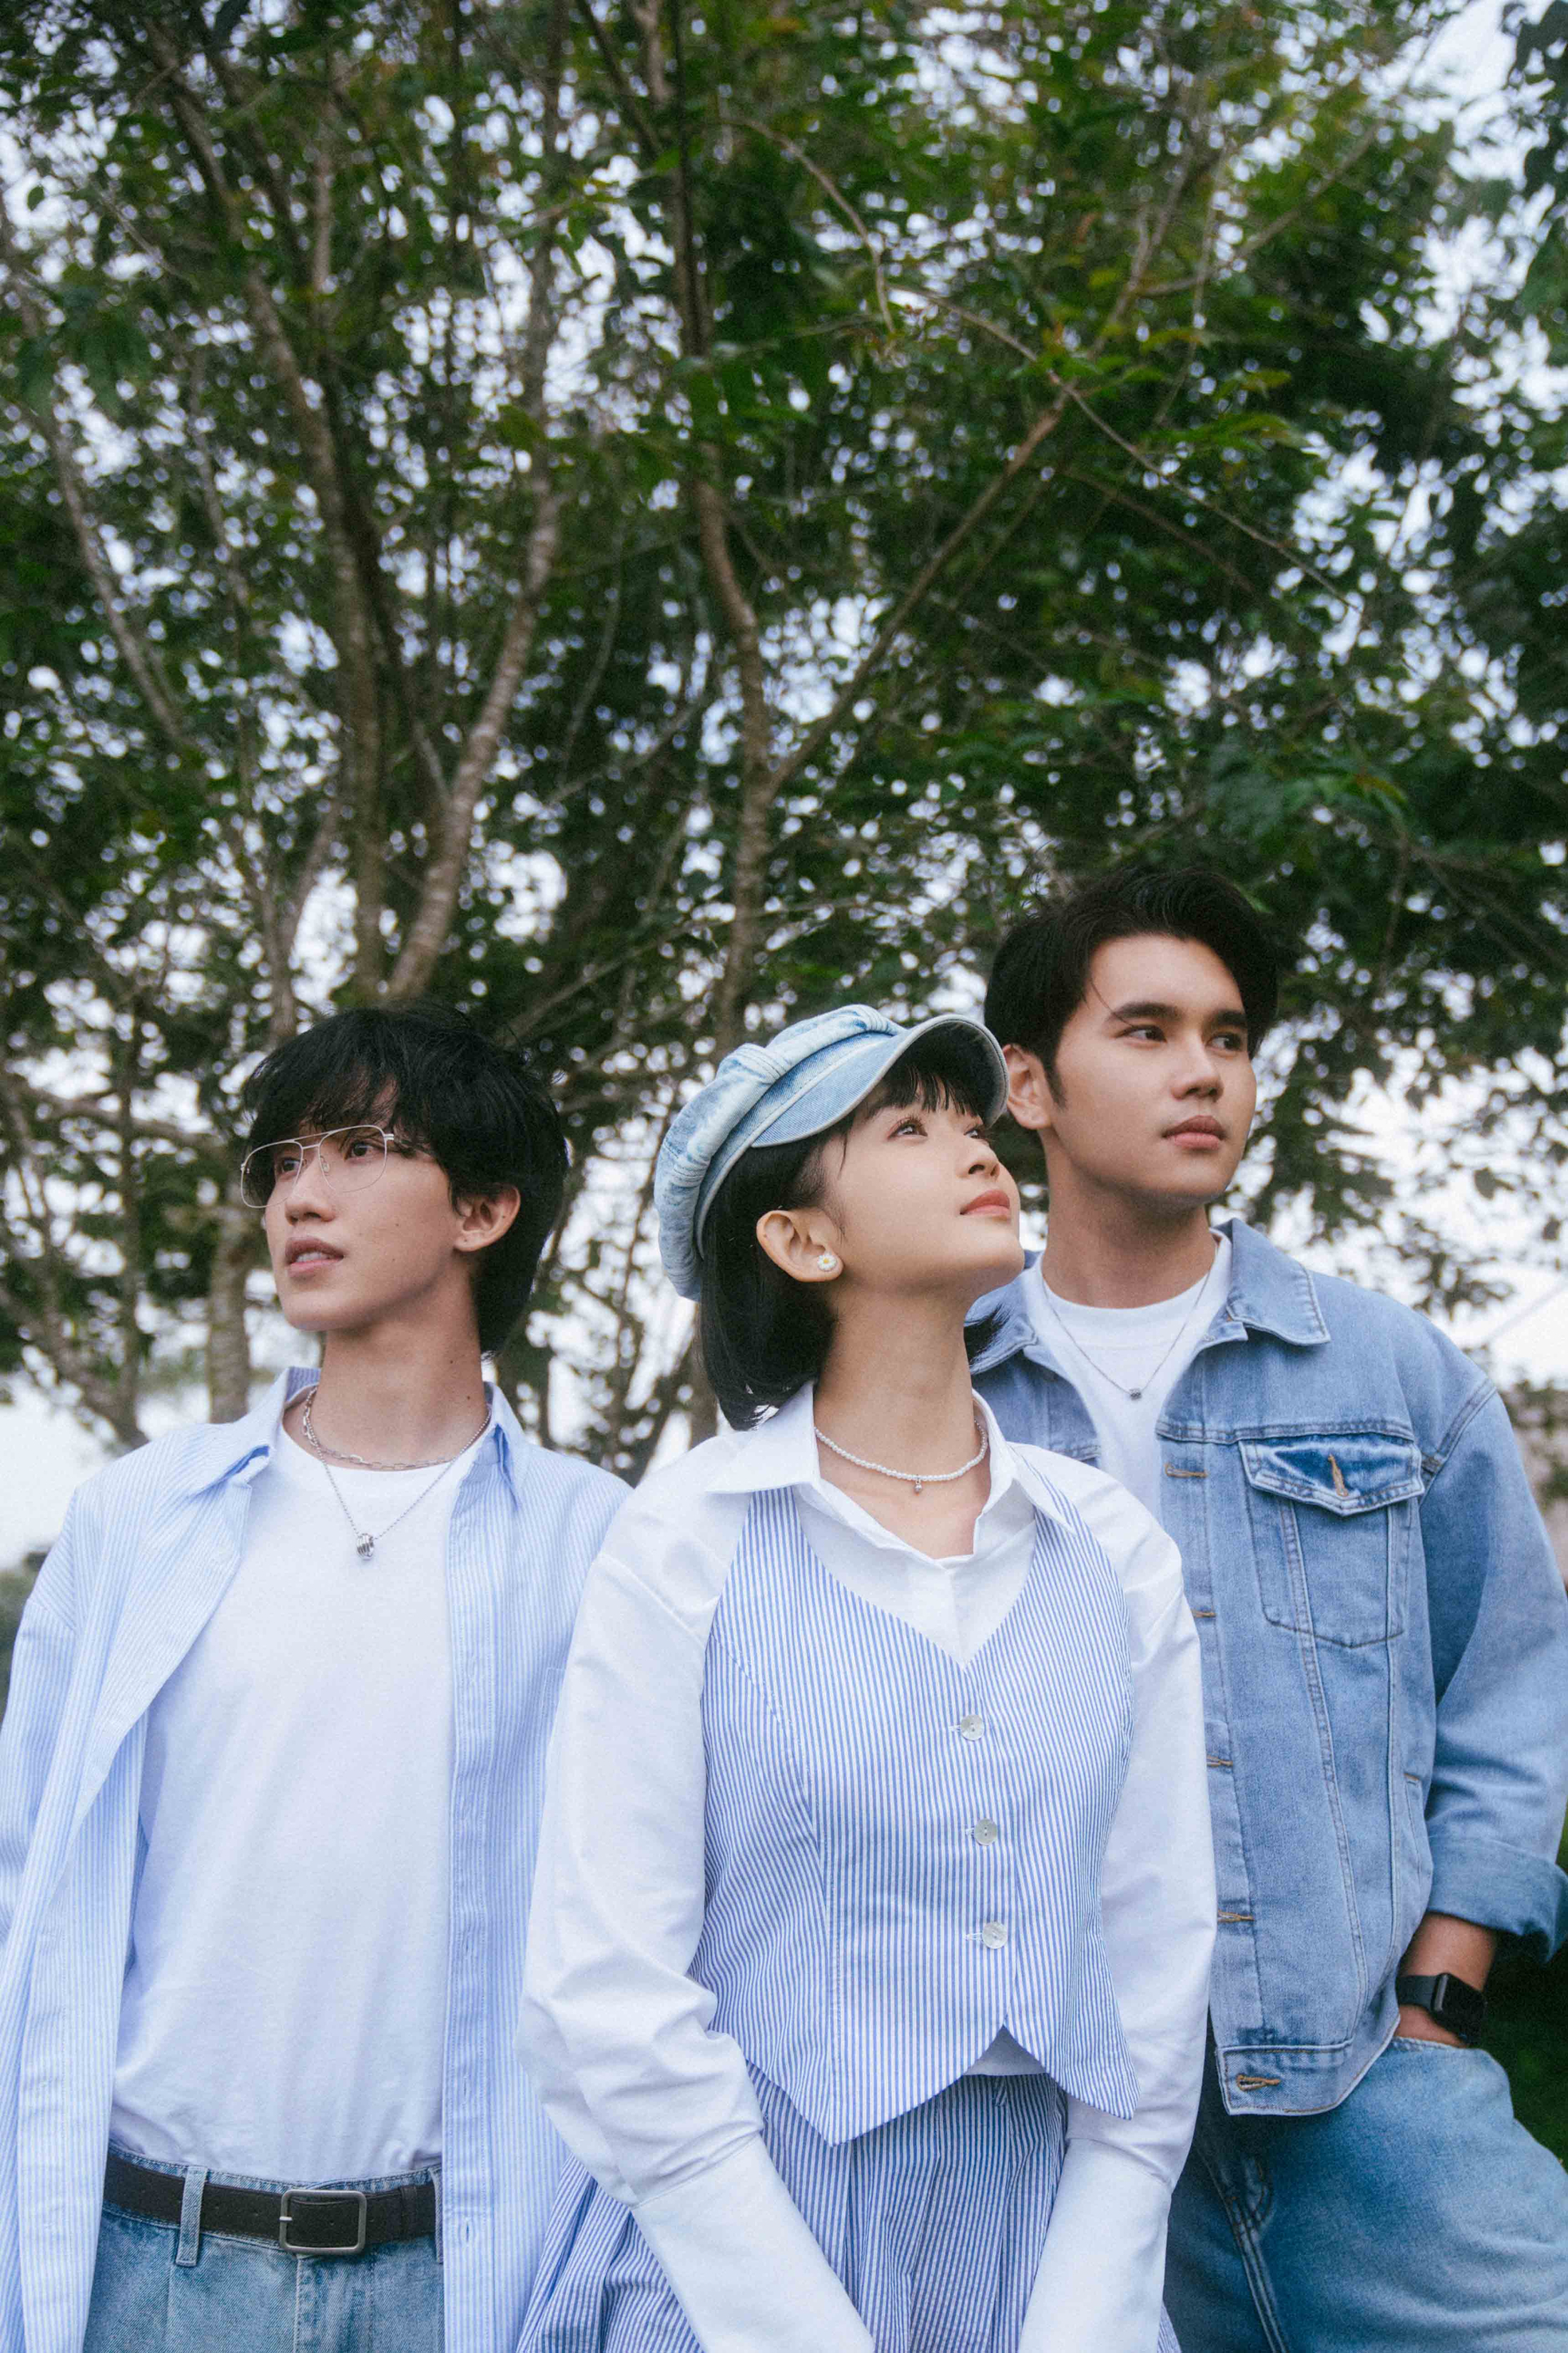 Á quân Vietnam Idol Lâm Phúc ra mắt MV đầu tay lấy cảm hứng từ mối tình thanh xuân của mình - ảnh 1